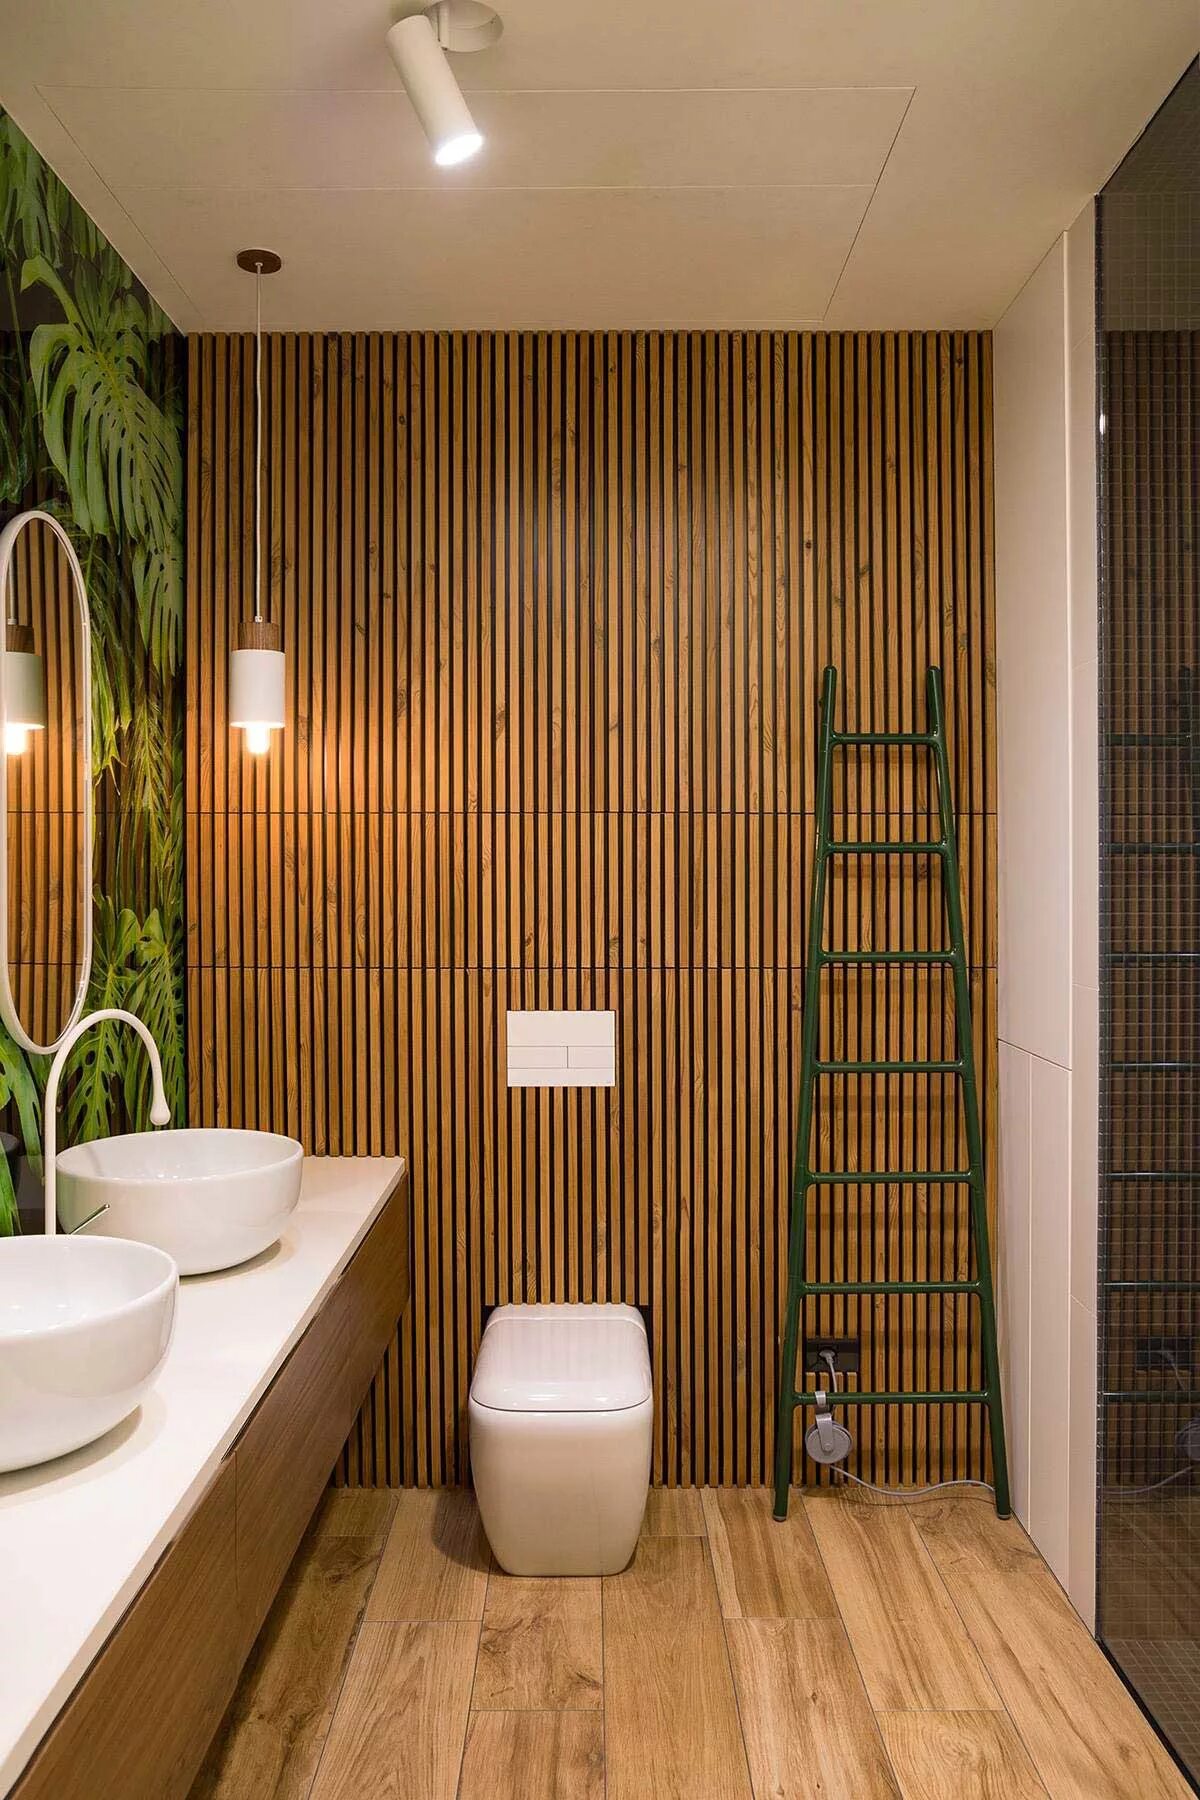 Панели дерево ванной. Душевая комната экостиль под дерево. Ванная в тропическом стиле. Бамбук в интерьере ванной. Интерьер санузла.